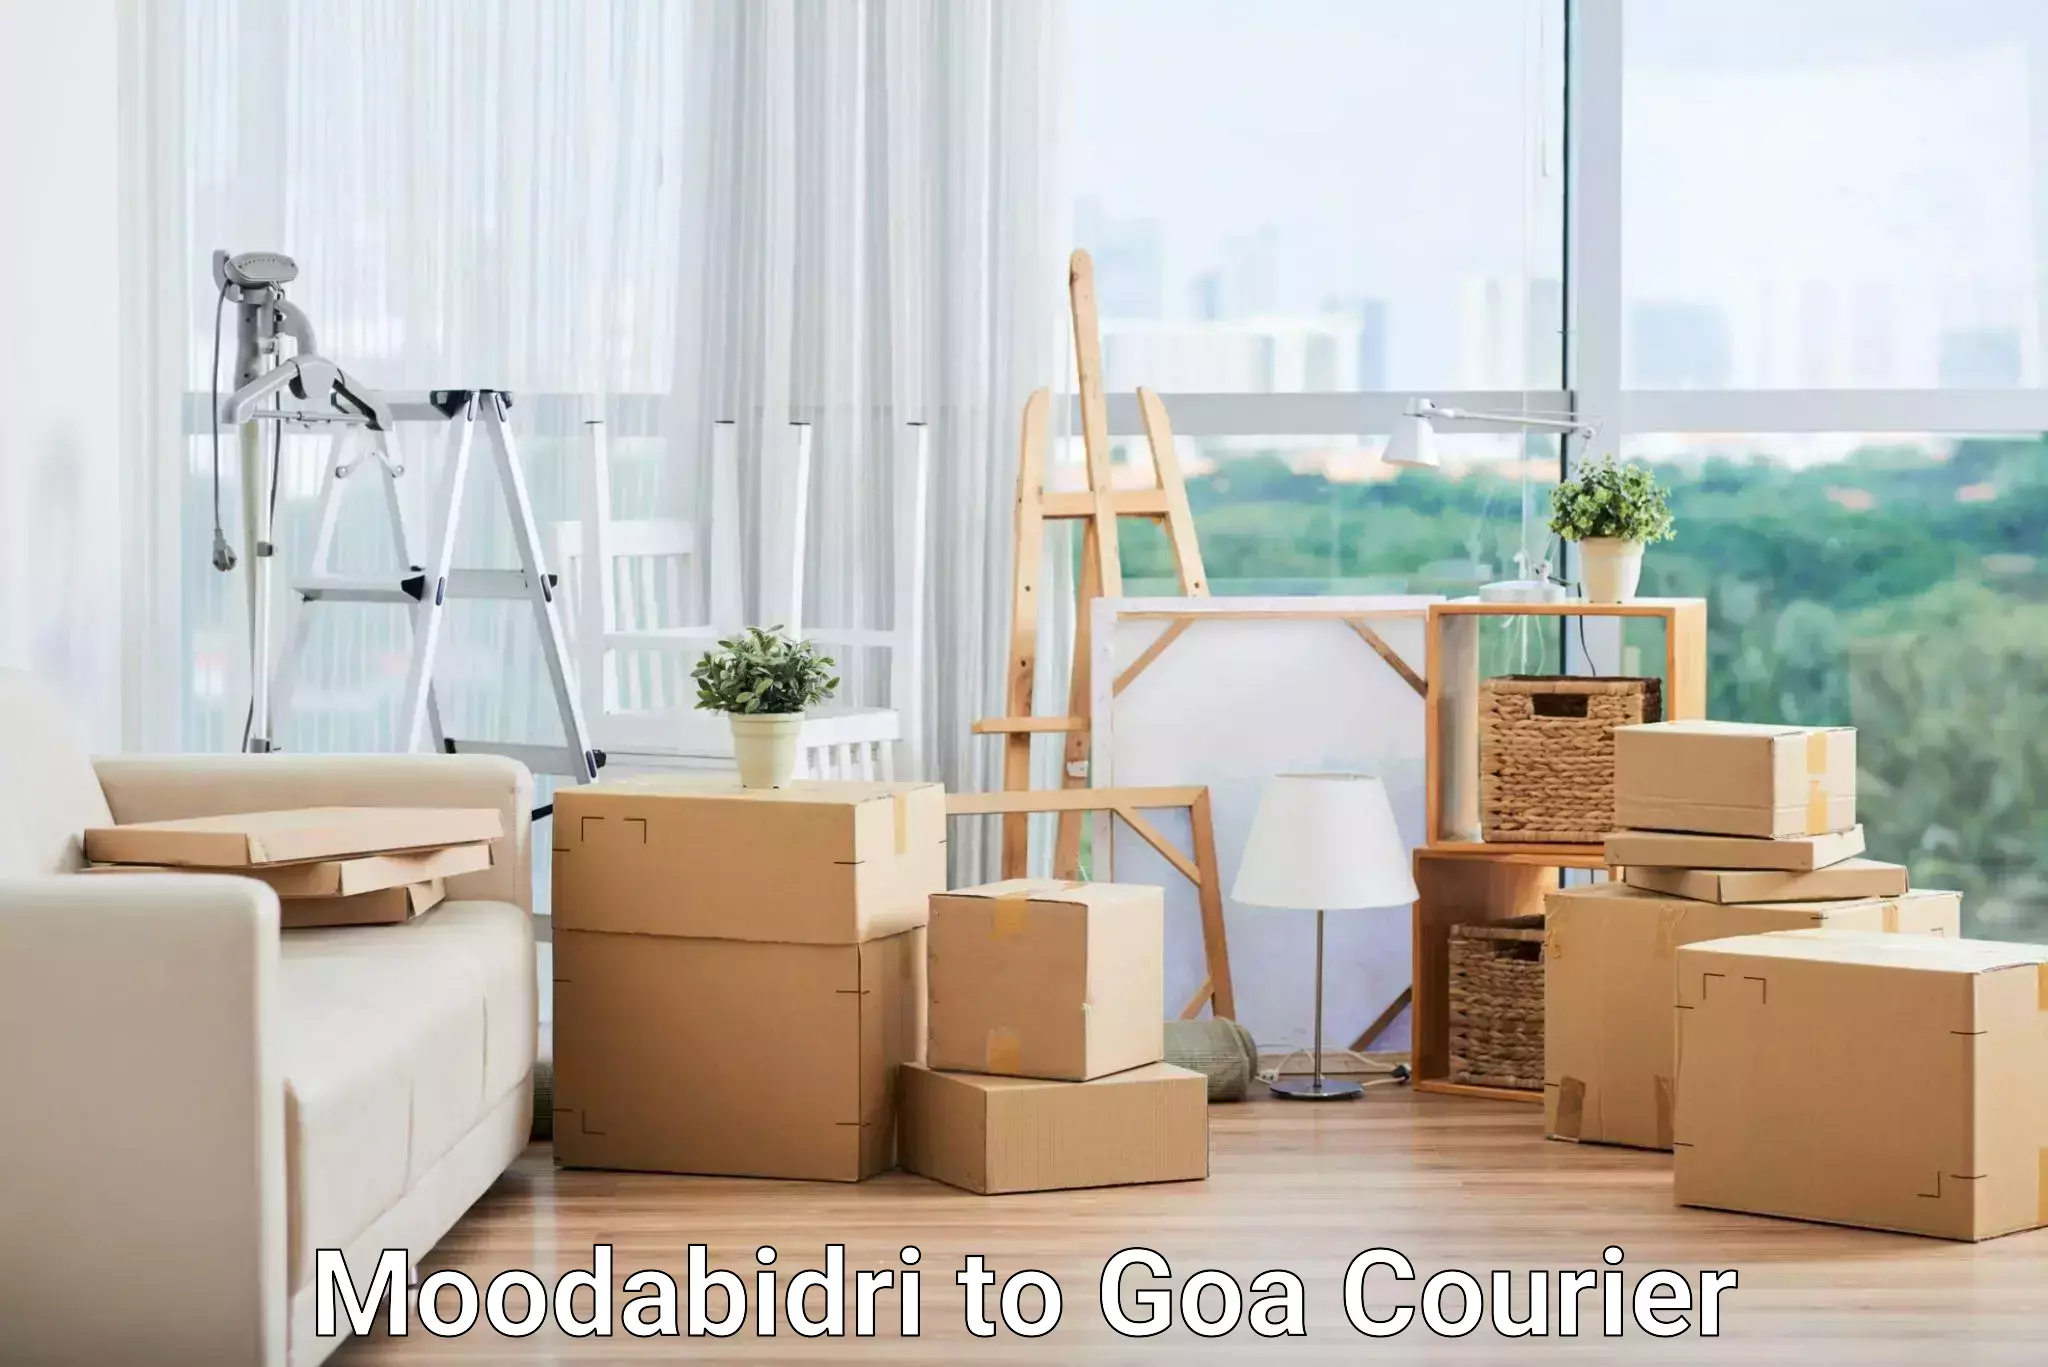 Overnight delivery services Moodabidri to South Goa